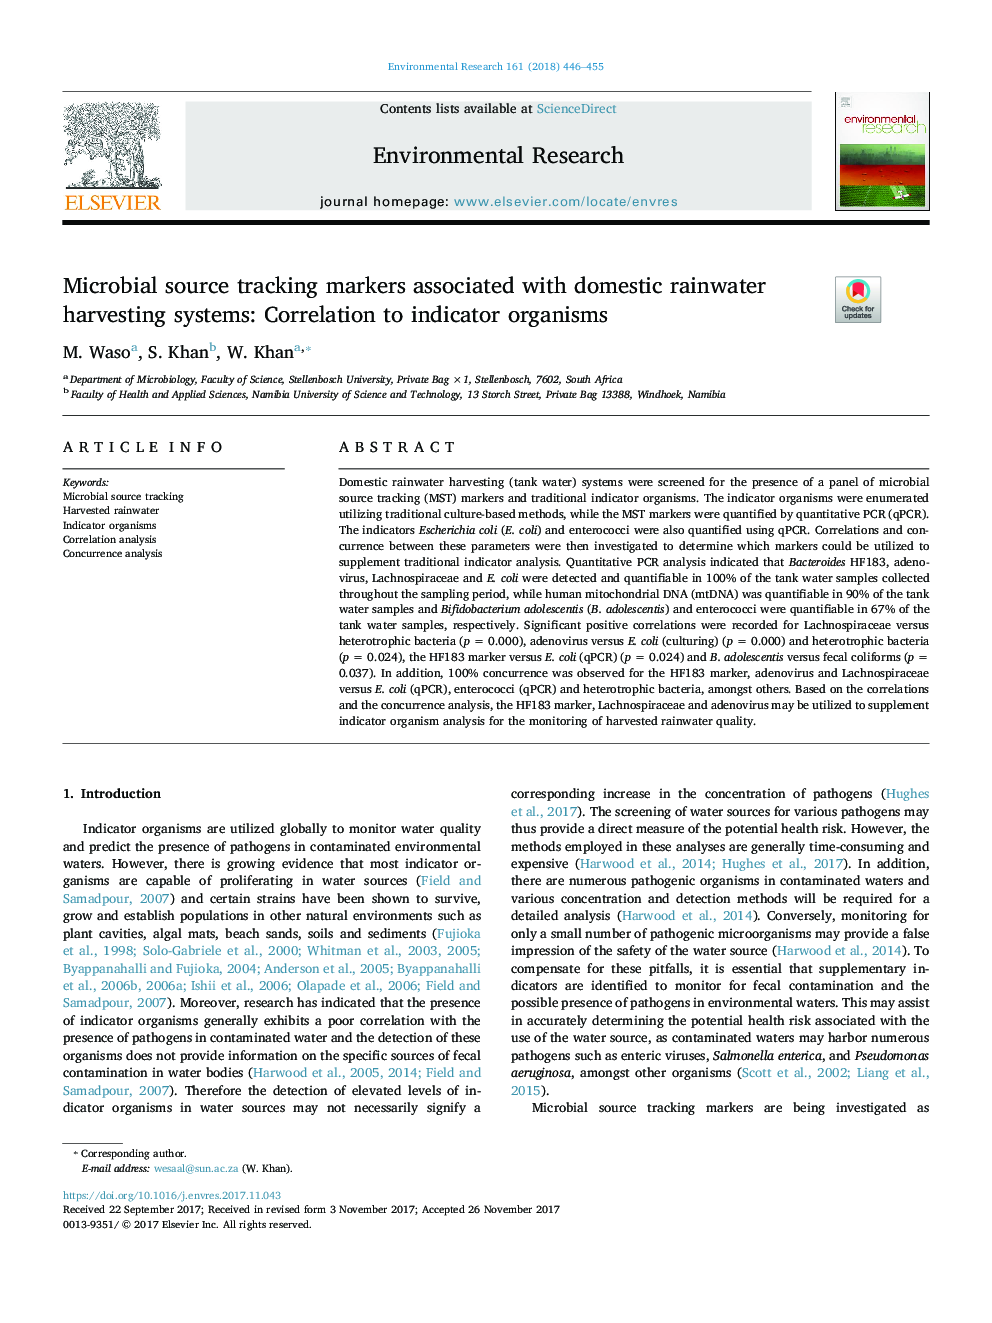 نشانگرهای ردیابی منابع میکروبی مرتبط با سیستم های برداشت خانگی باروری داخلی: همبستگی با ارگانیسم های شاخص 